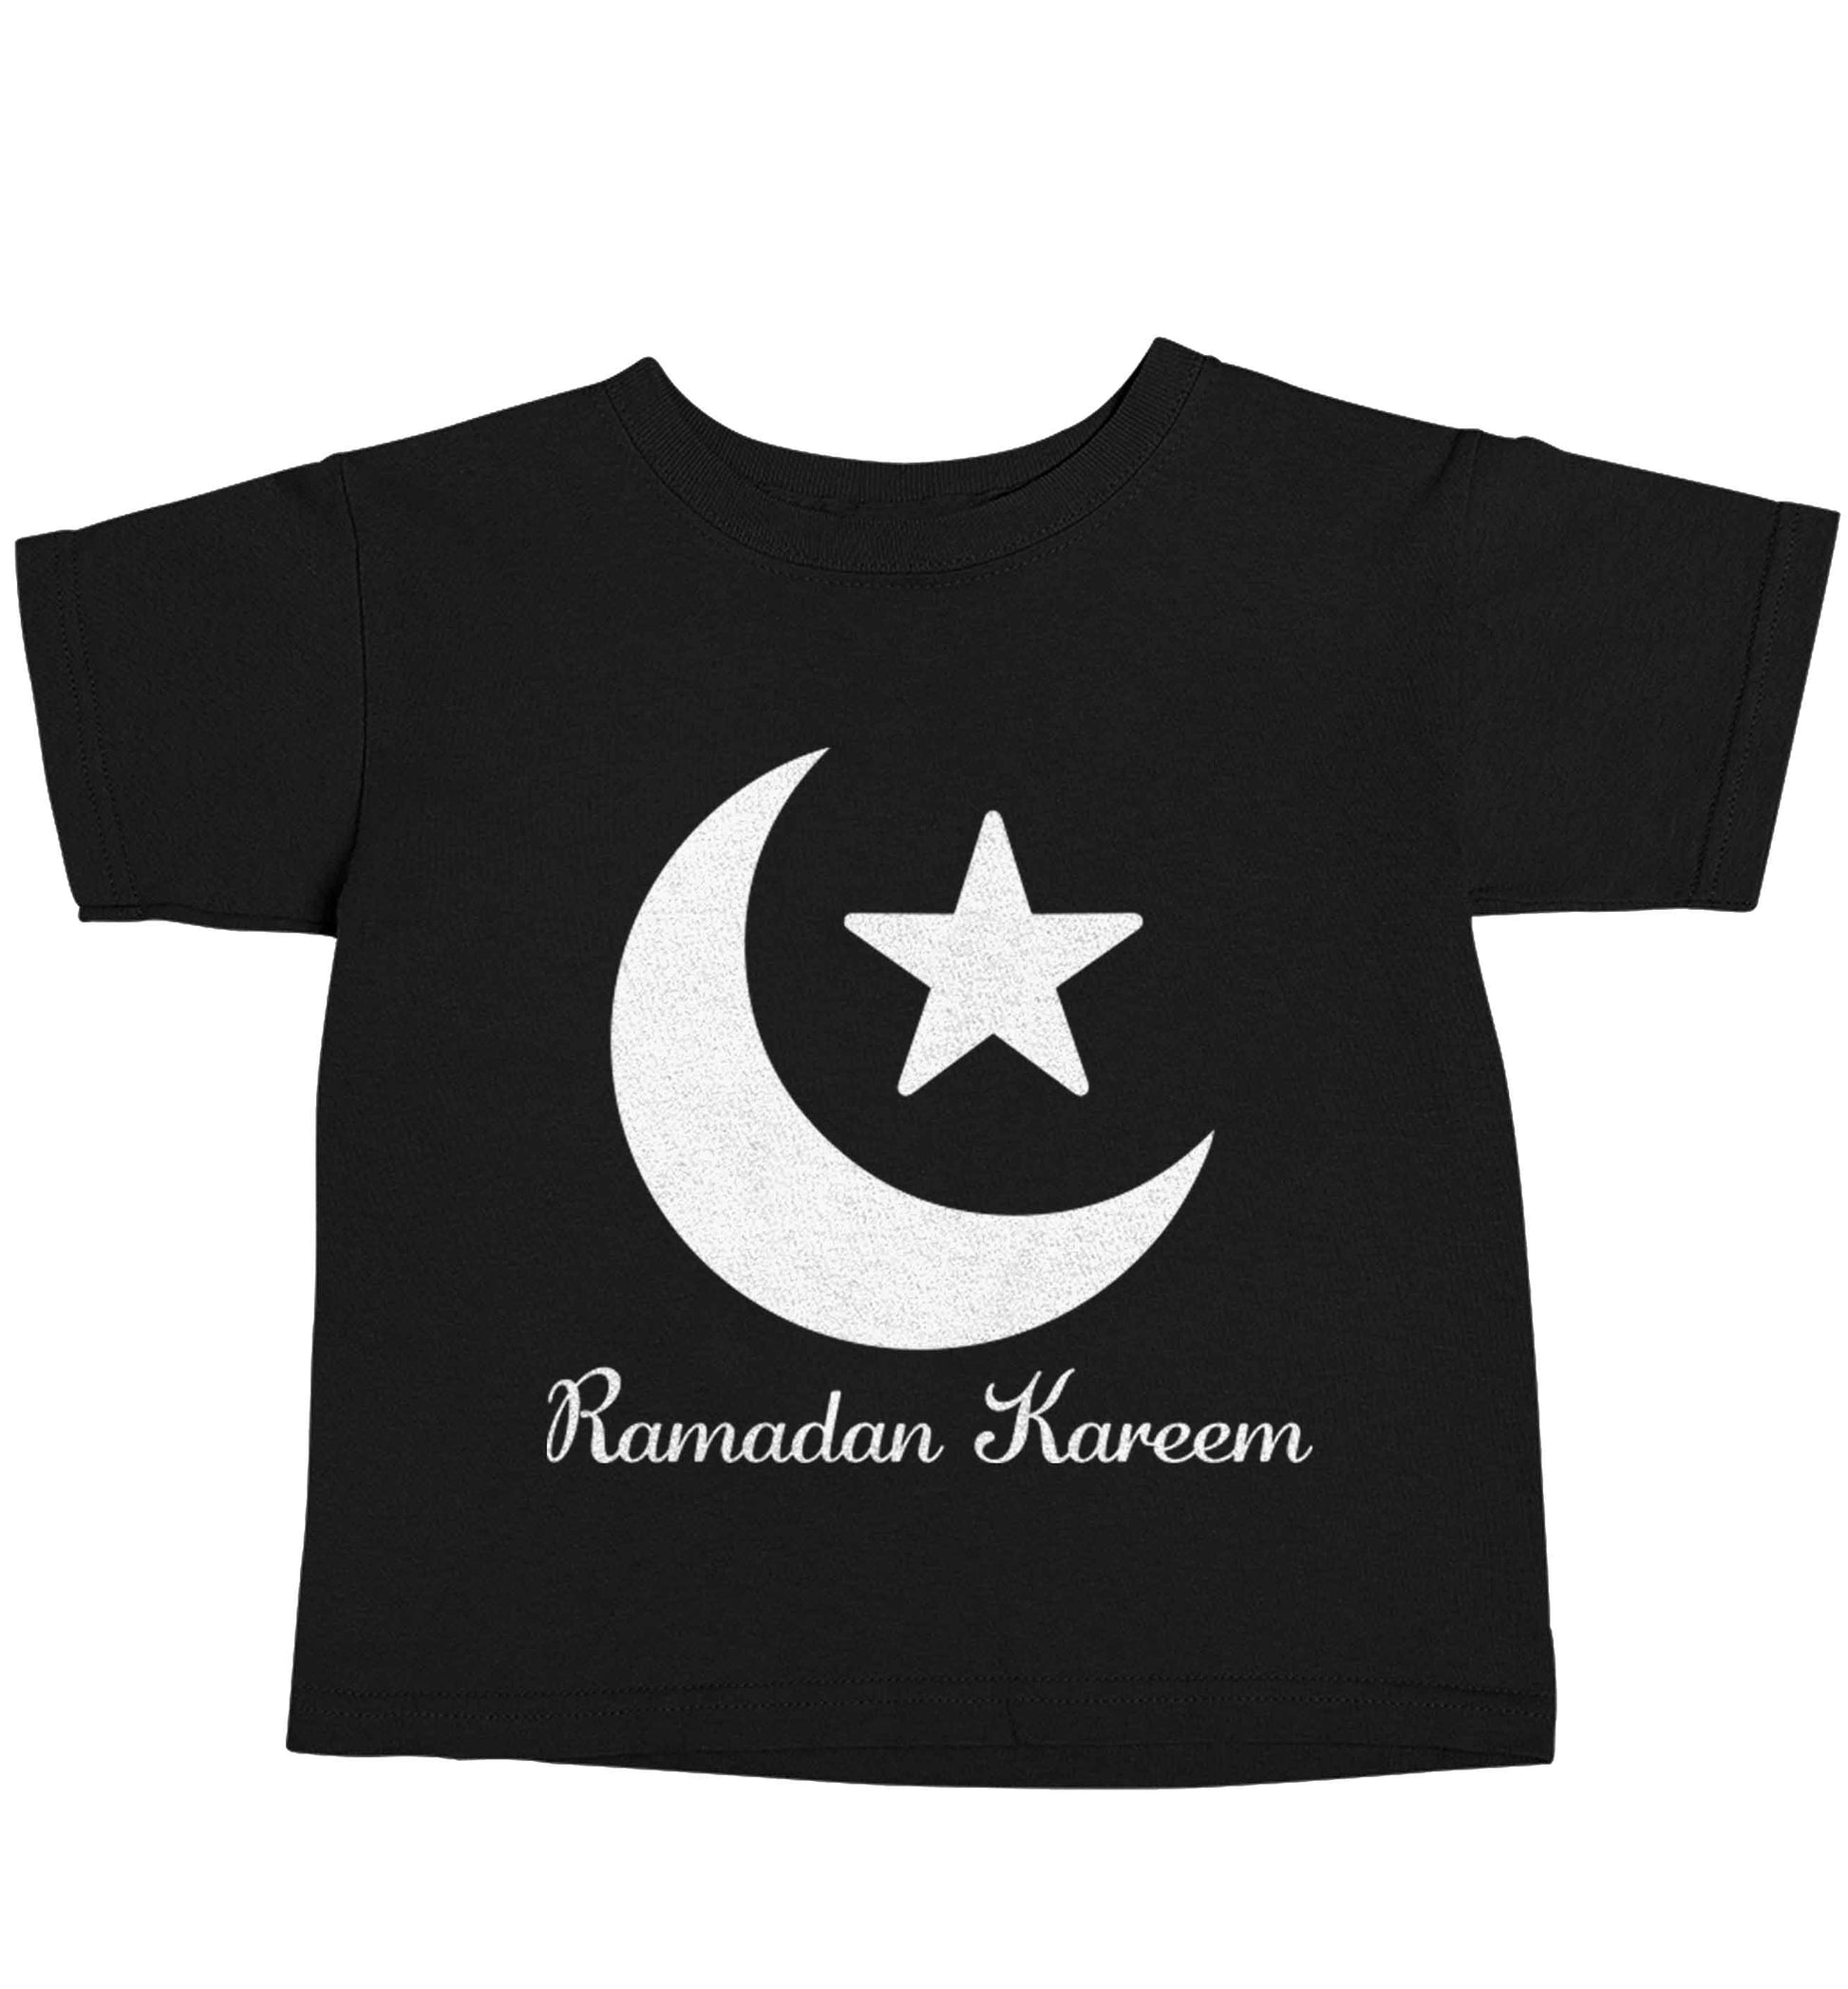 Ramadan kareem Black baby toddler Tshirt 2 years